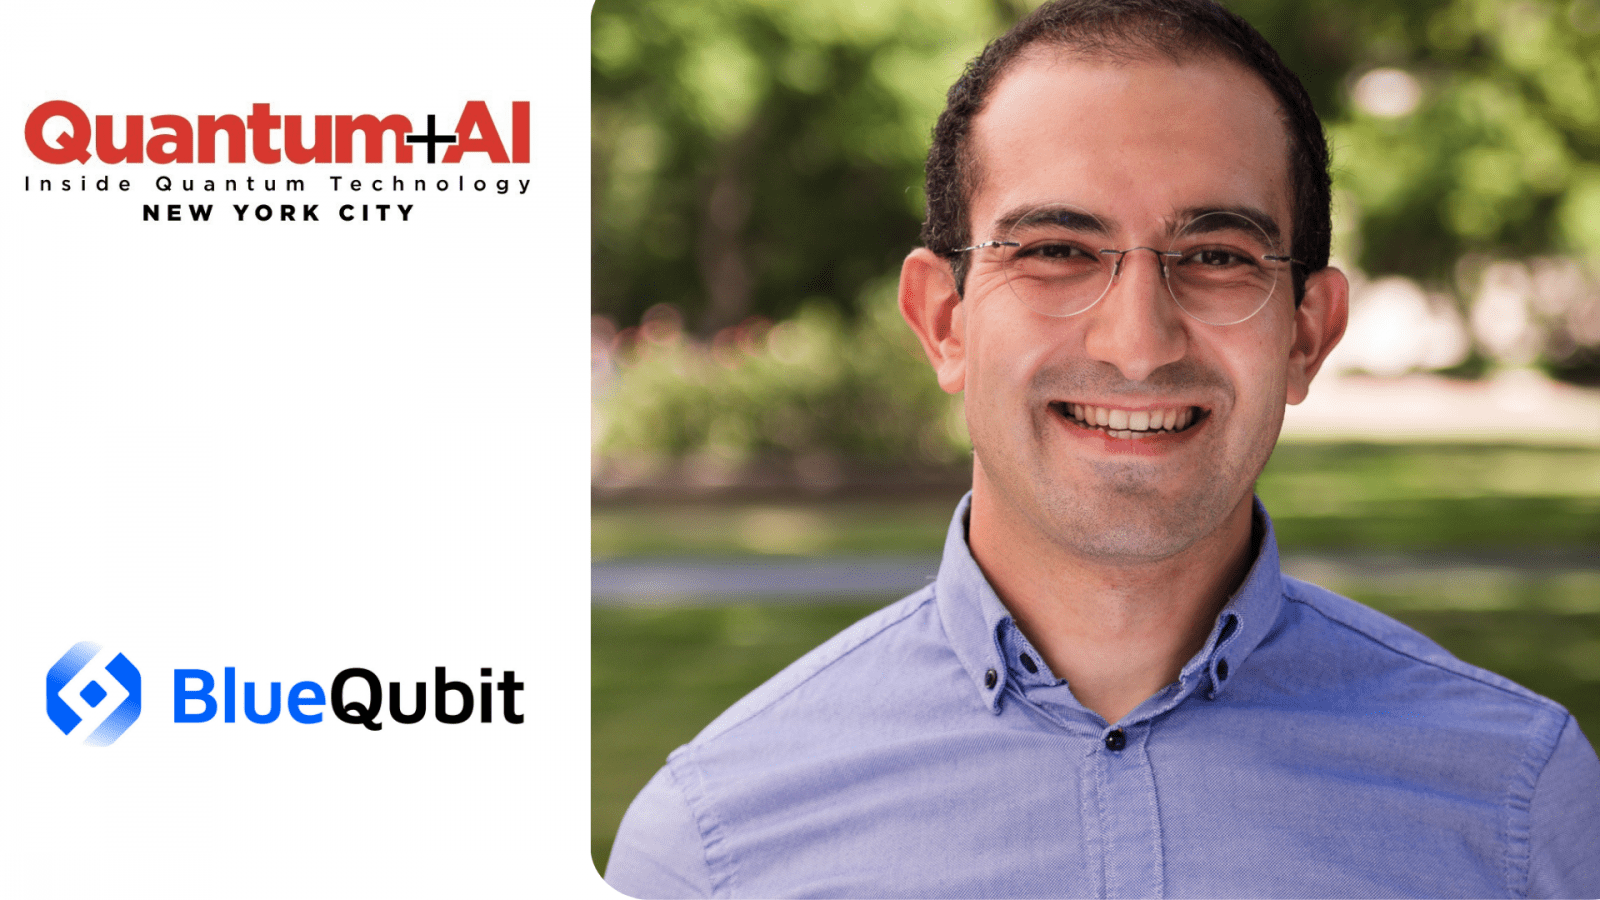 Ο Διευθύνων Σύμβουλος και συνιδρυτής της BlueQubit, Hrant Gharibyan, είναι ομιλητής του 2024 για το συνέδριο IQT Quantum + AI - Inside Quantum Technology